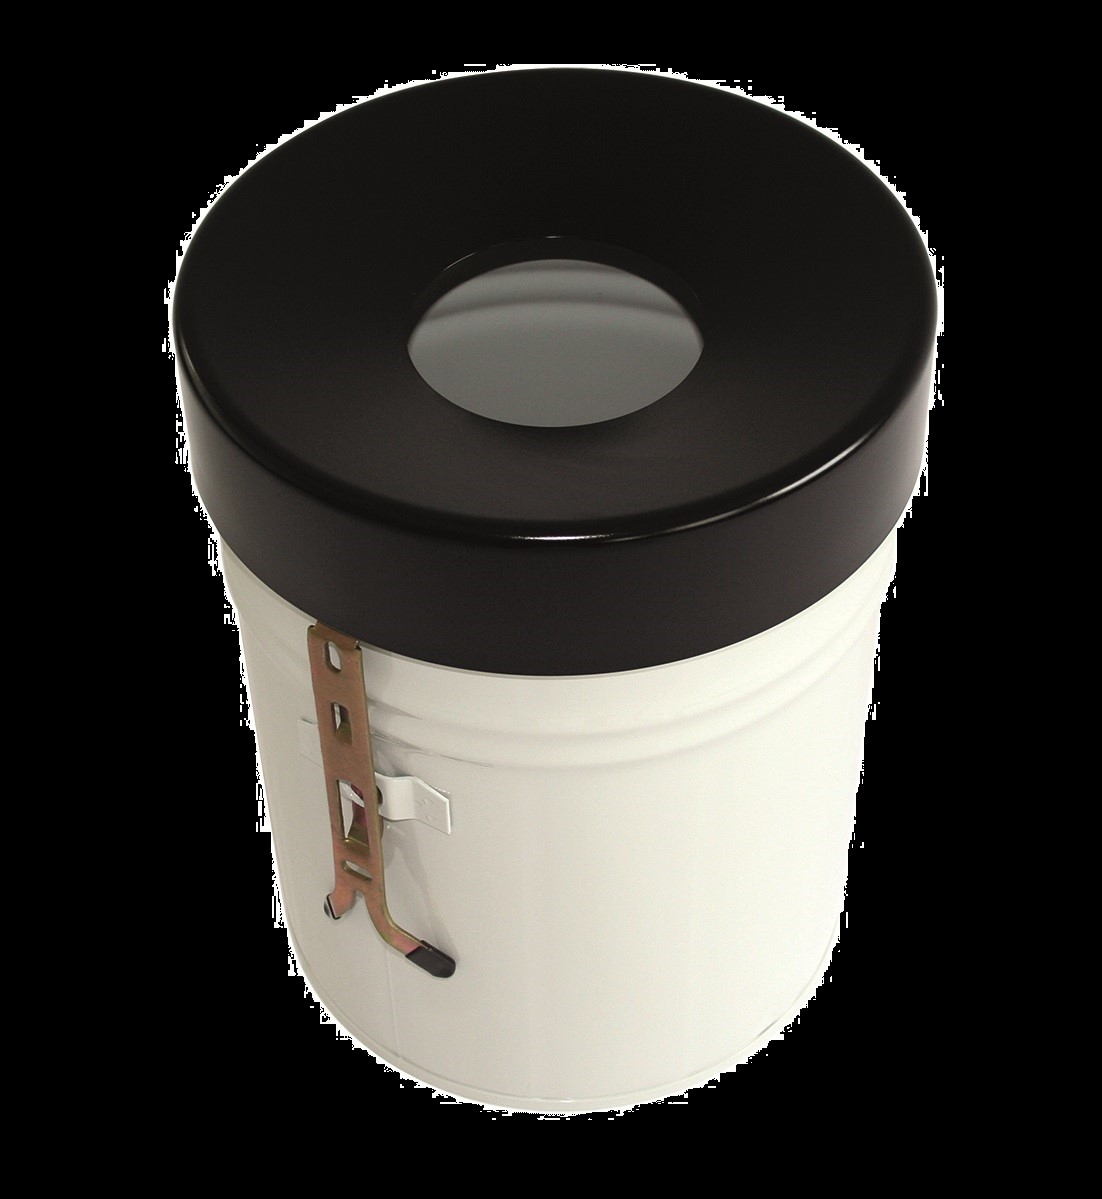 Selbstlöschender Abfallbehälter FIRE EX zur Wandbefestigung, 60 l, weiß, Kopfteil schwarz Standard 1 ZOOM